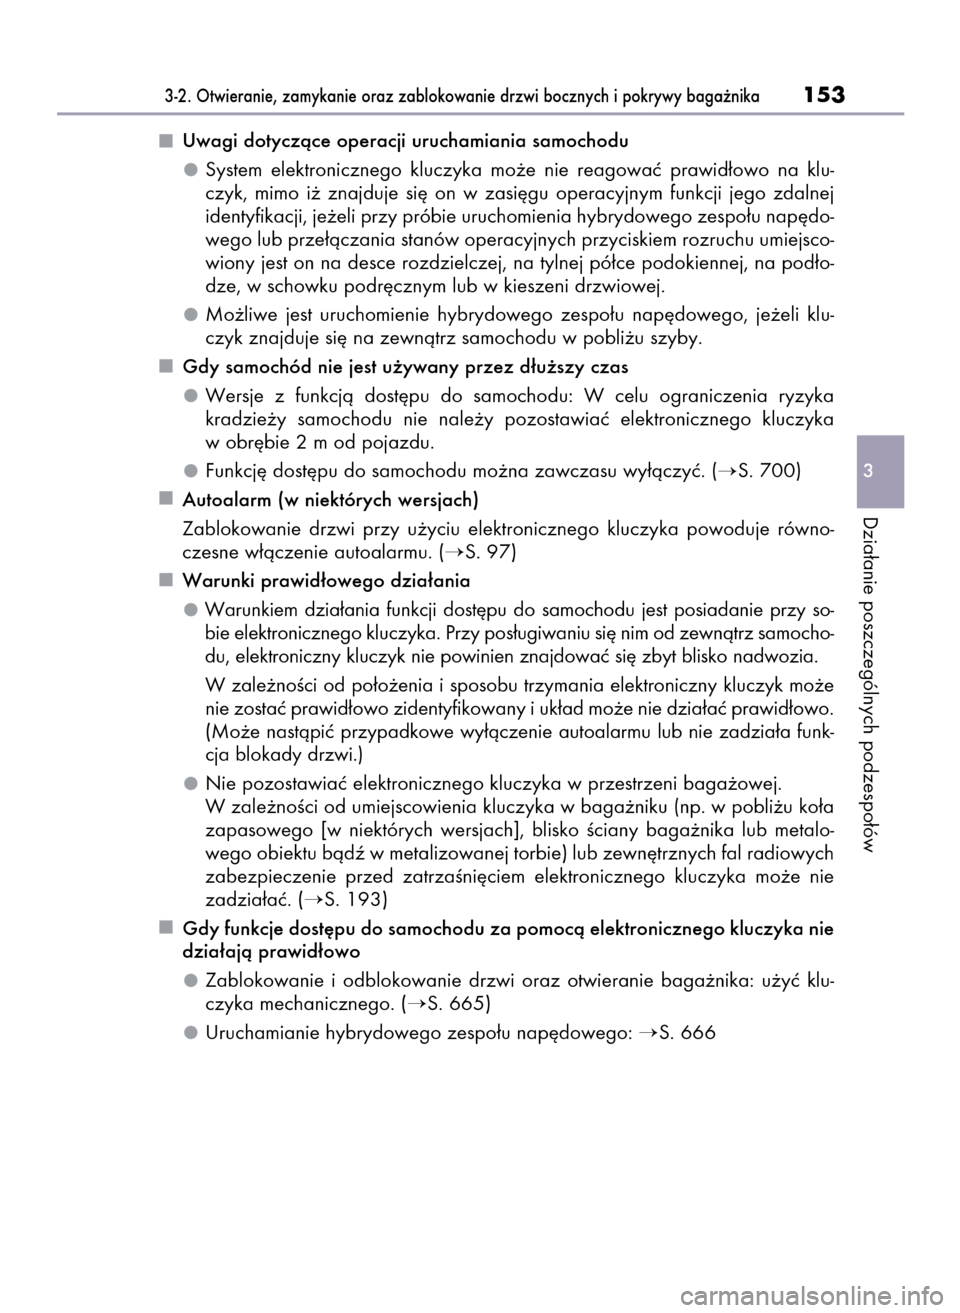 Lexus GS450h 2015  Instrukcja Obsługi (in Polish) Uwagi dotyczàce operacji uruchamiania samochodu
System  elektronicznego  kluczyka  mo˝e  nie  reagowaç  prawid∏owo  na  klu-
czyk,  mimo  i˝  znajduje  si´  on  w zasi´gu  operacyjnym  funkcji